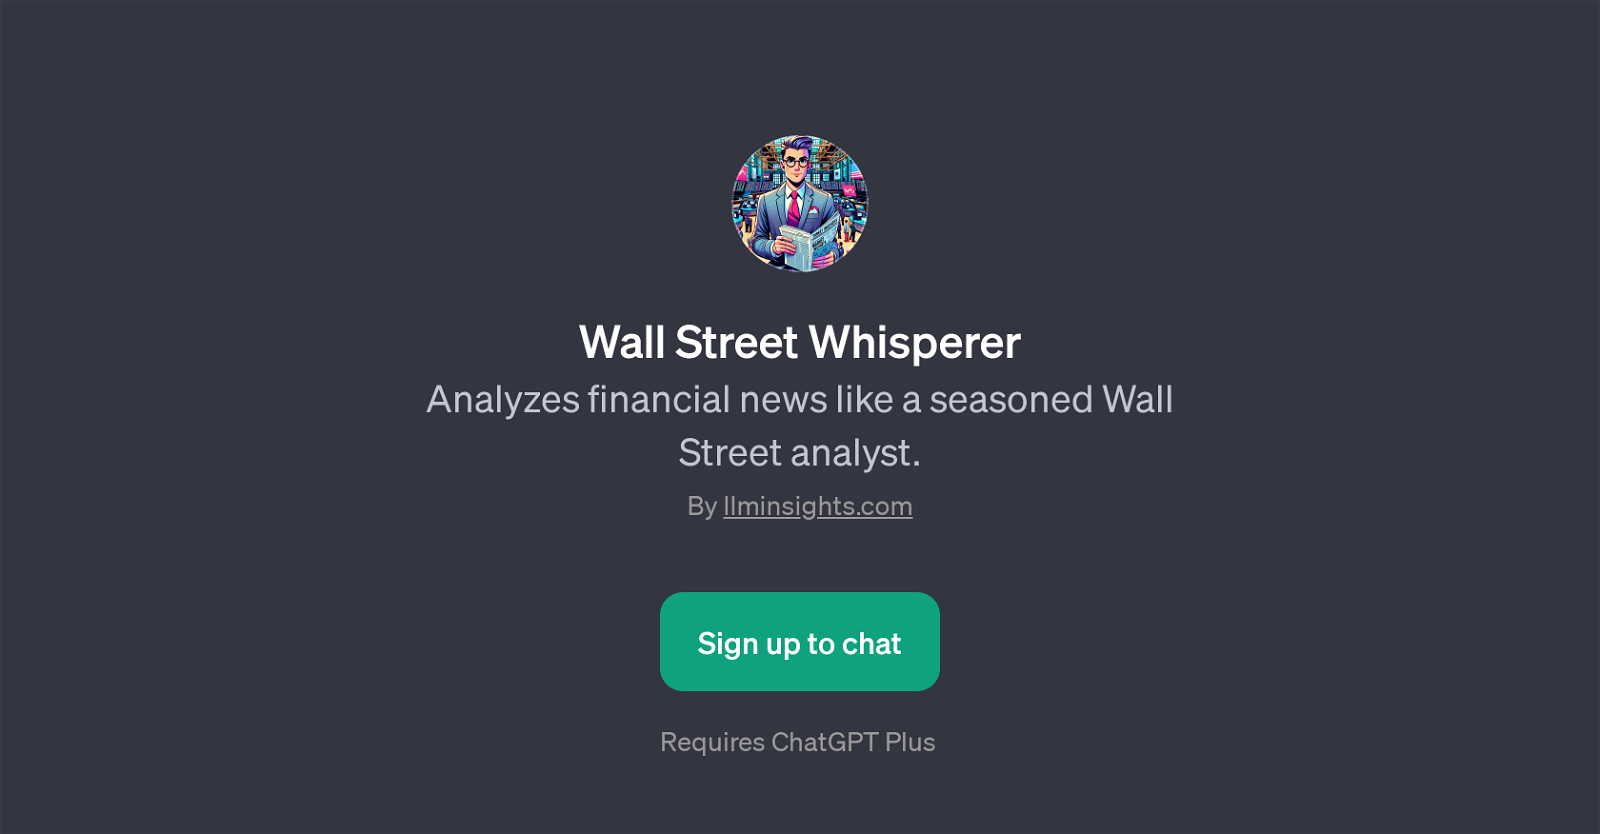 Wall Street Whisperer website